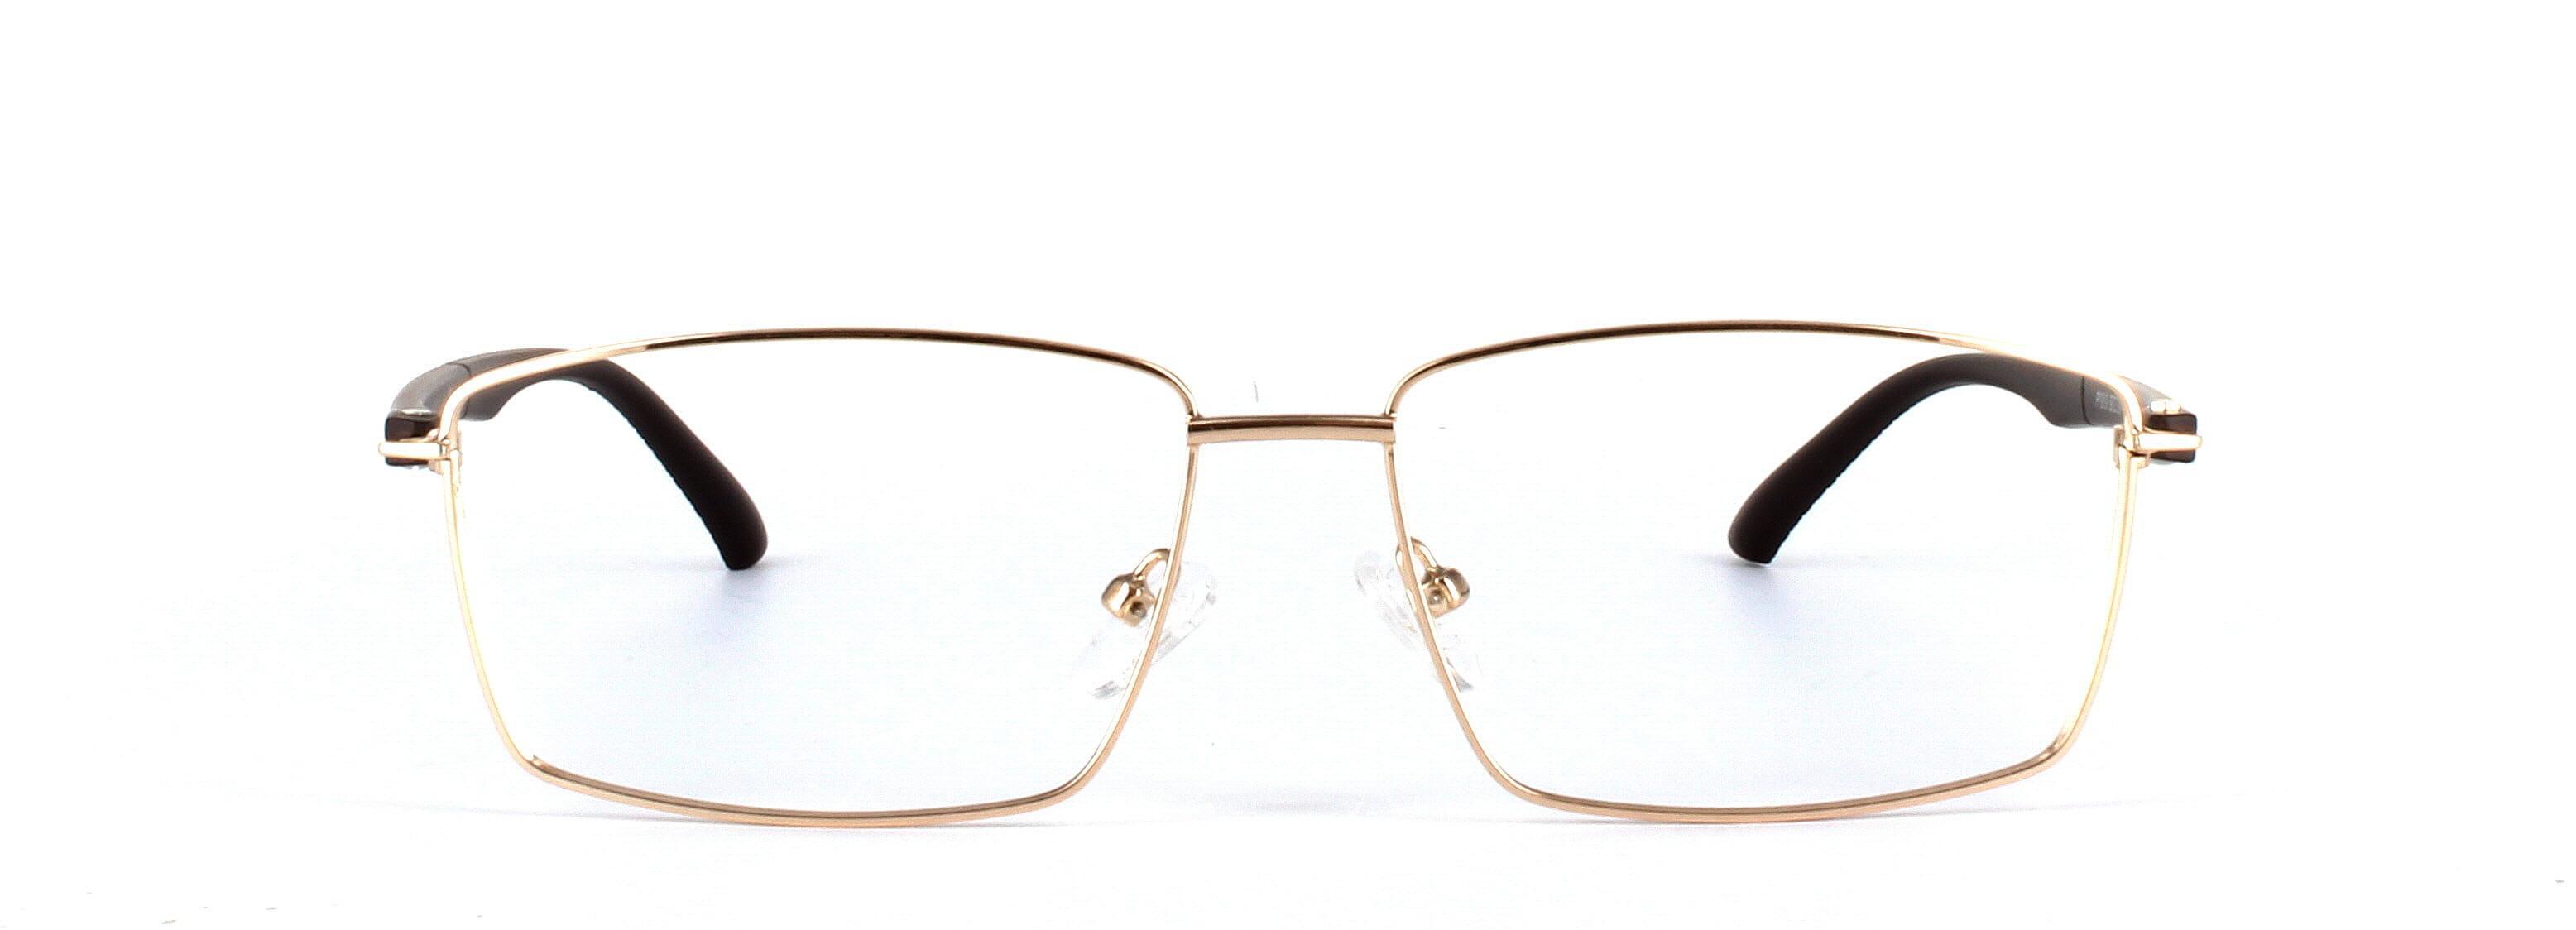 Texas Gold Full Rim Rectangular Metal Glasses - Image View 5